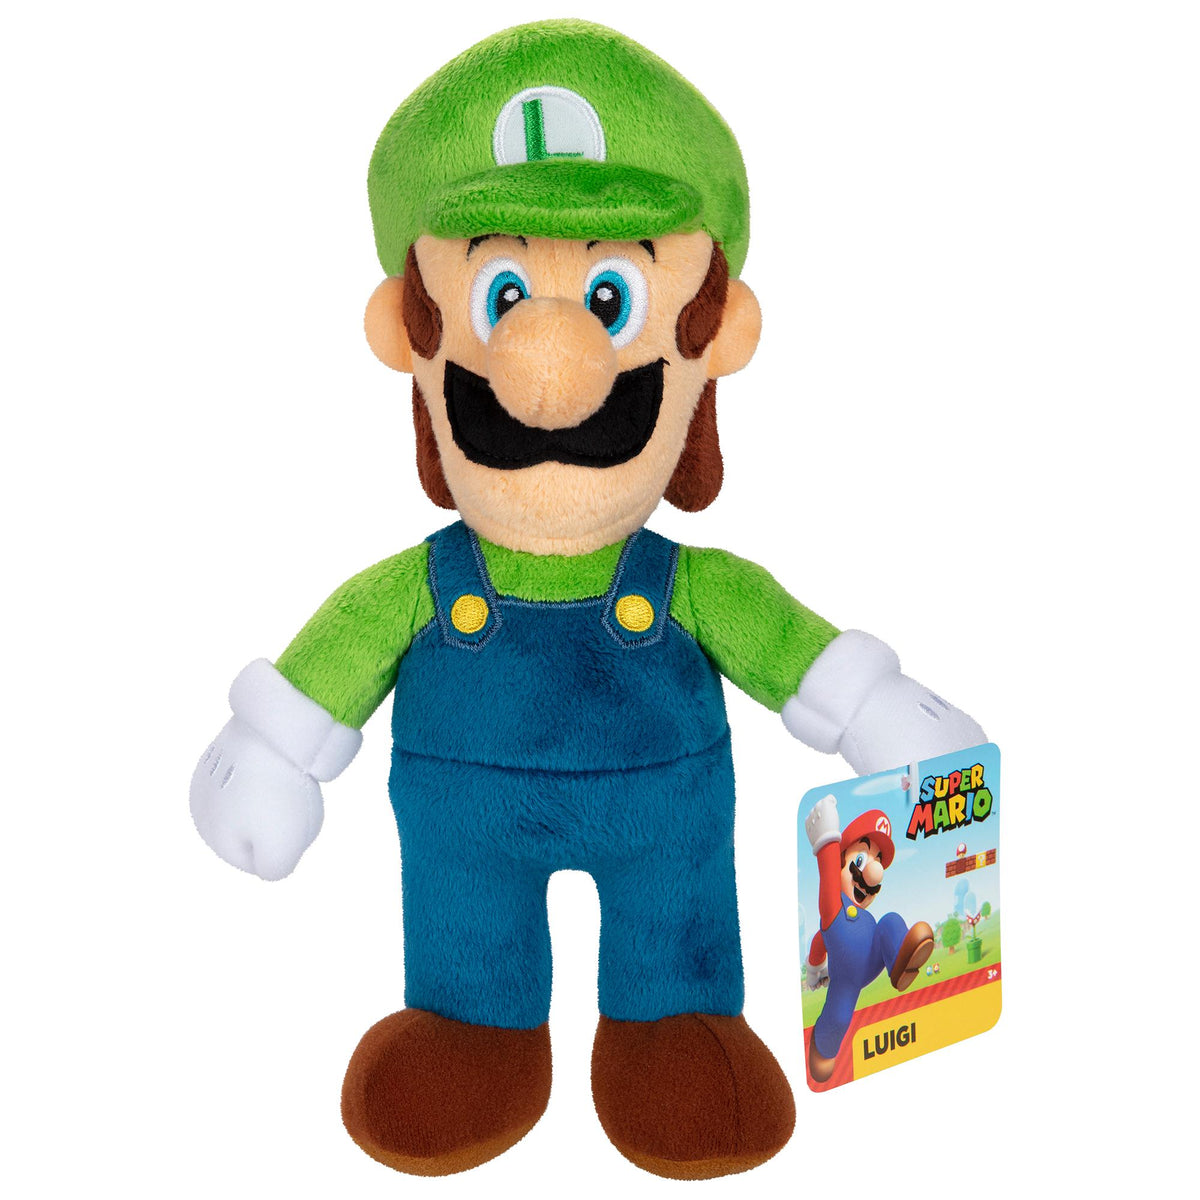 Super Mario Plush Toy Assortment